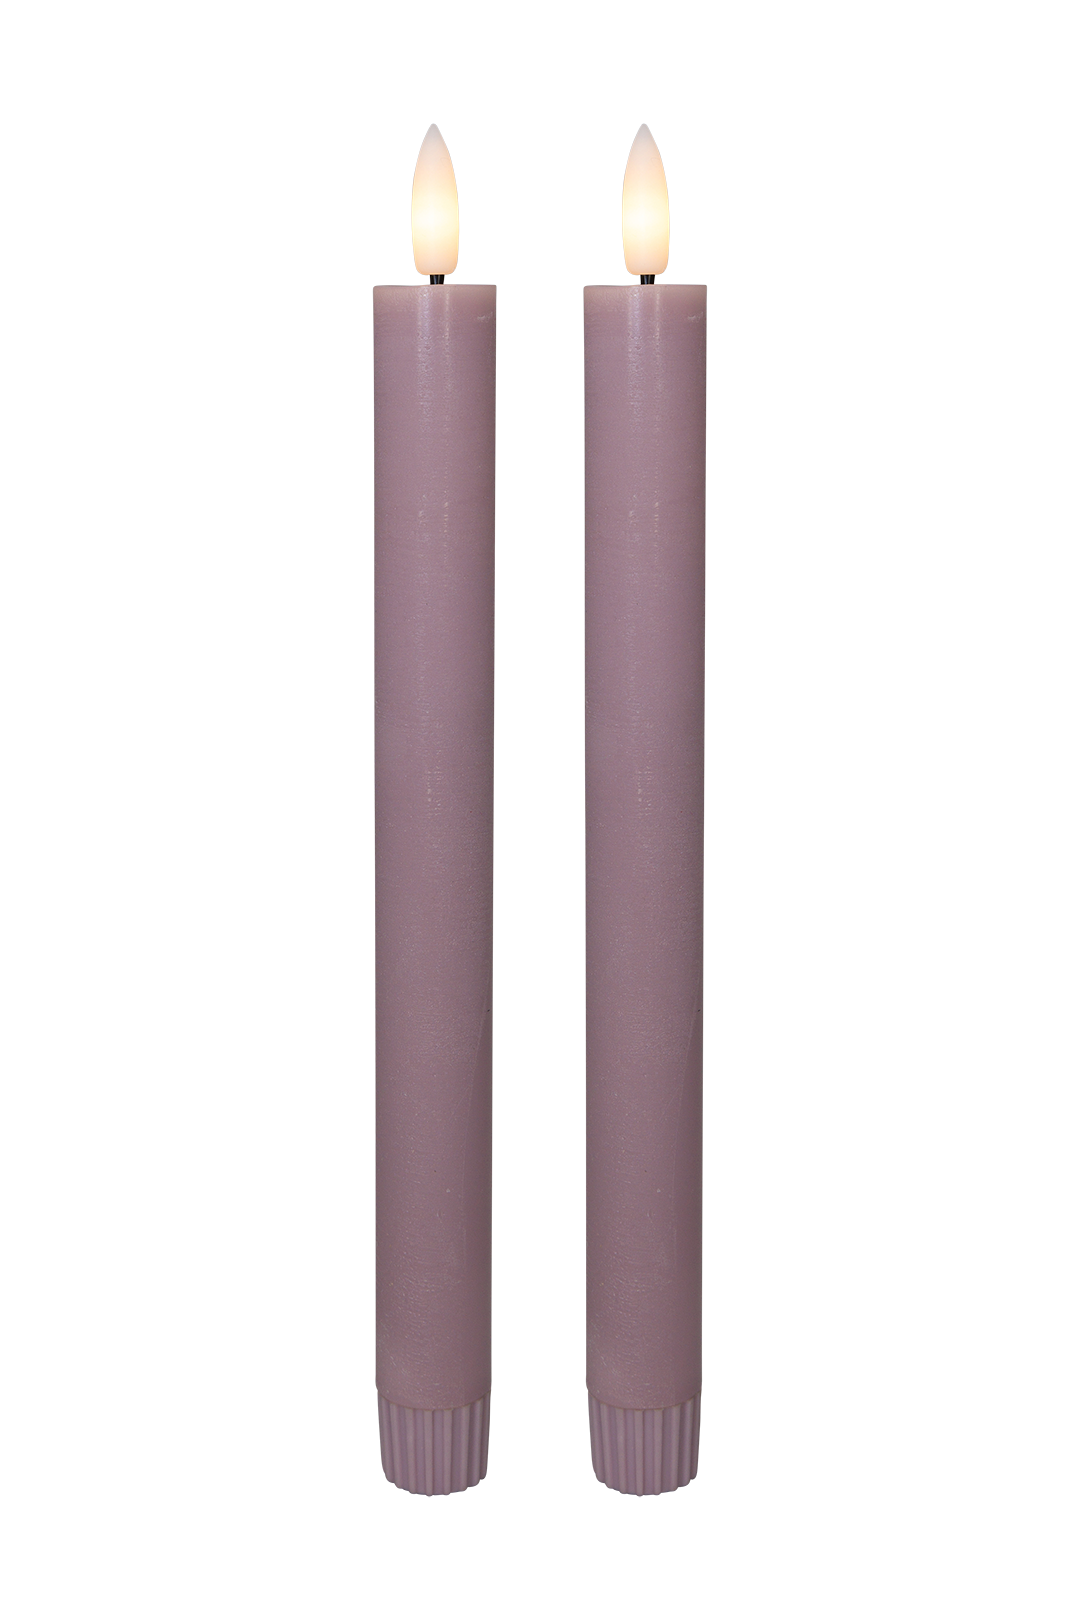 Cozzy kronelys, 3D flamme, 22,2 cm, rosa, 2 stk (bruges med fjernbetjening) thumbnail